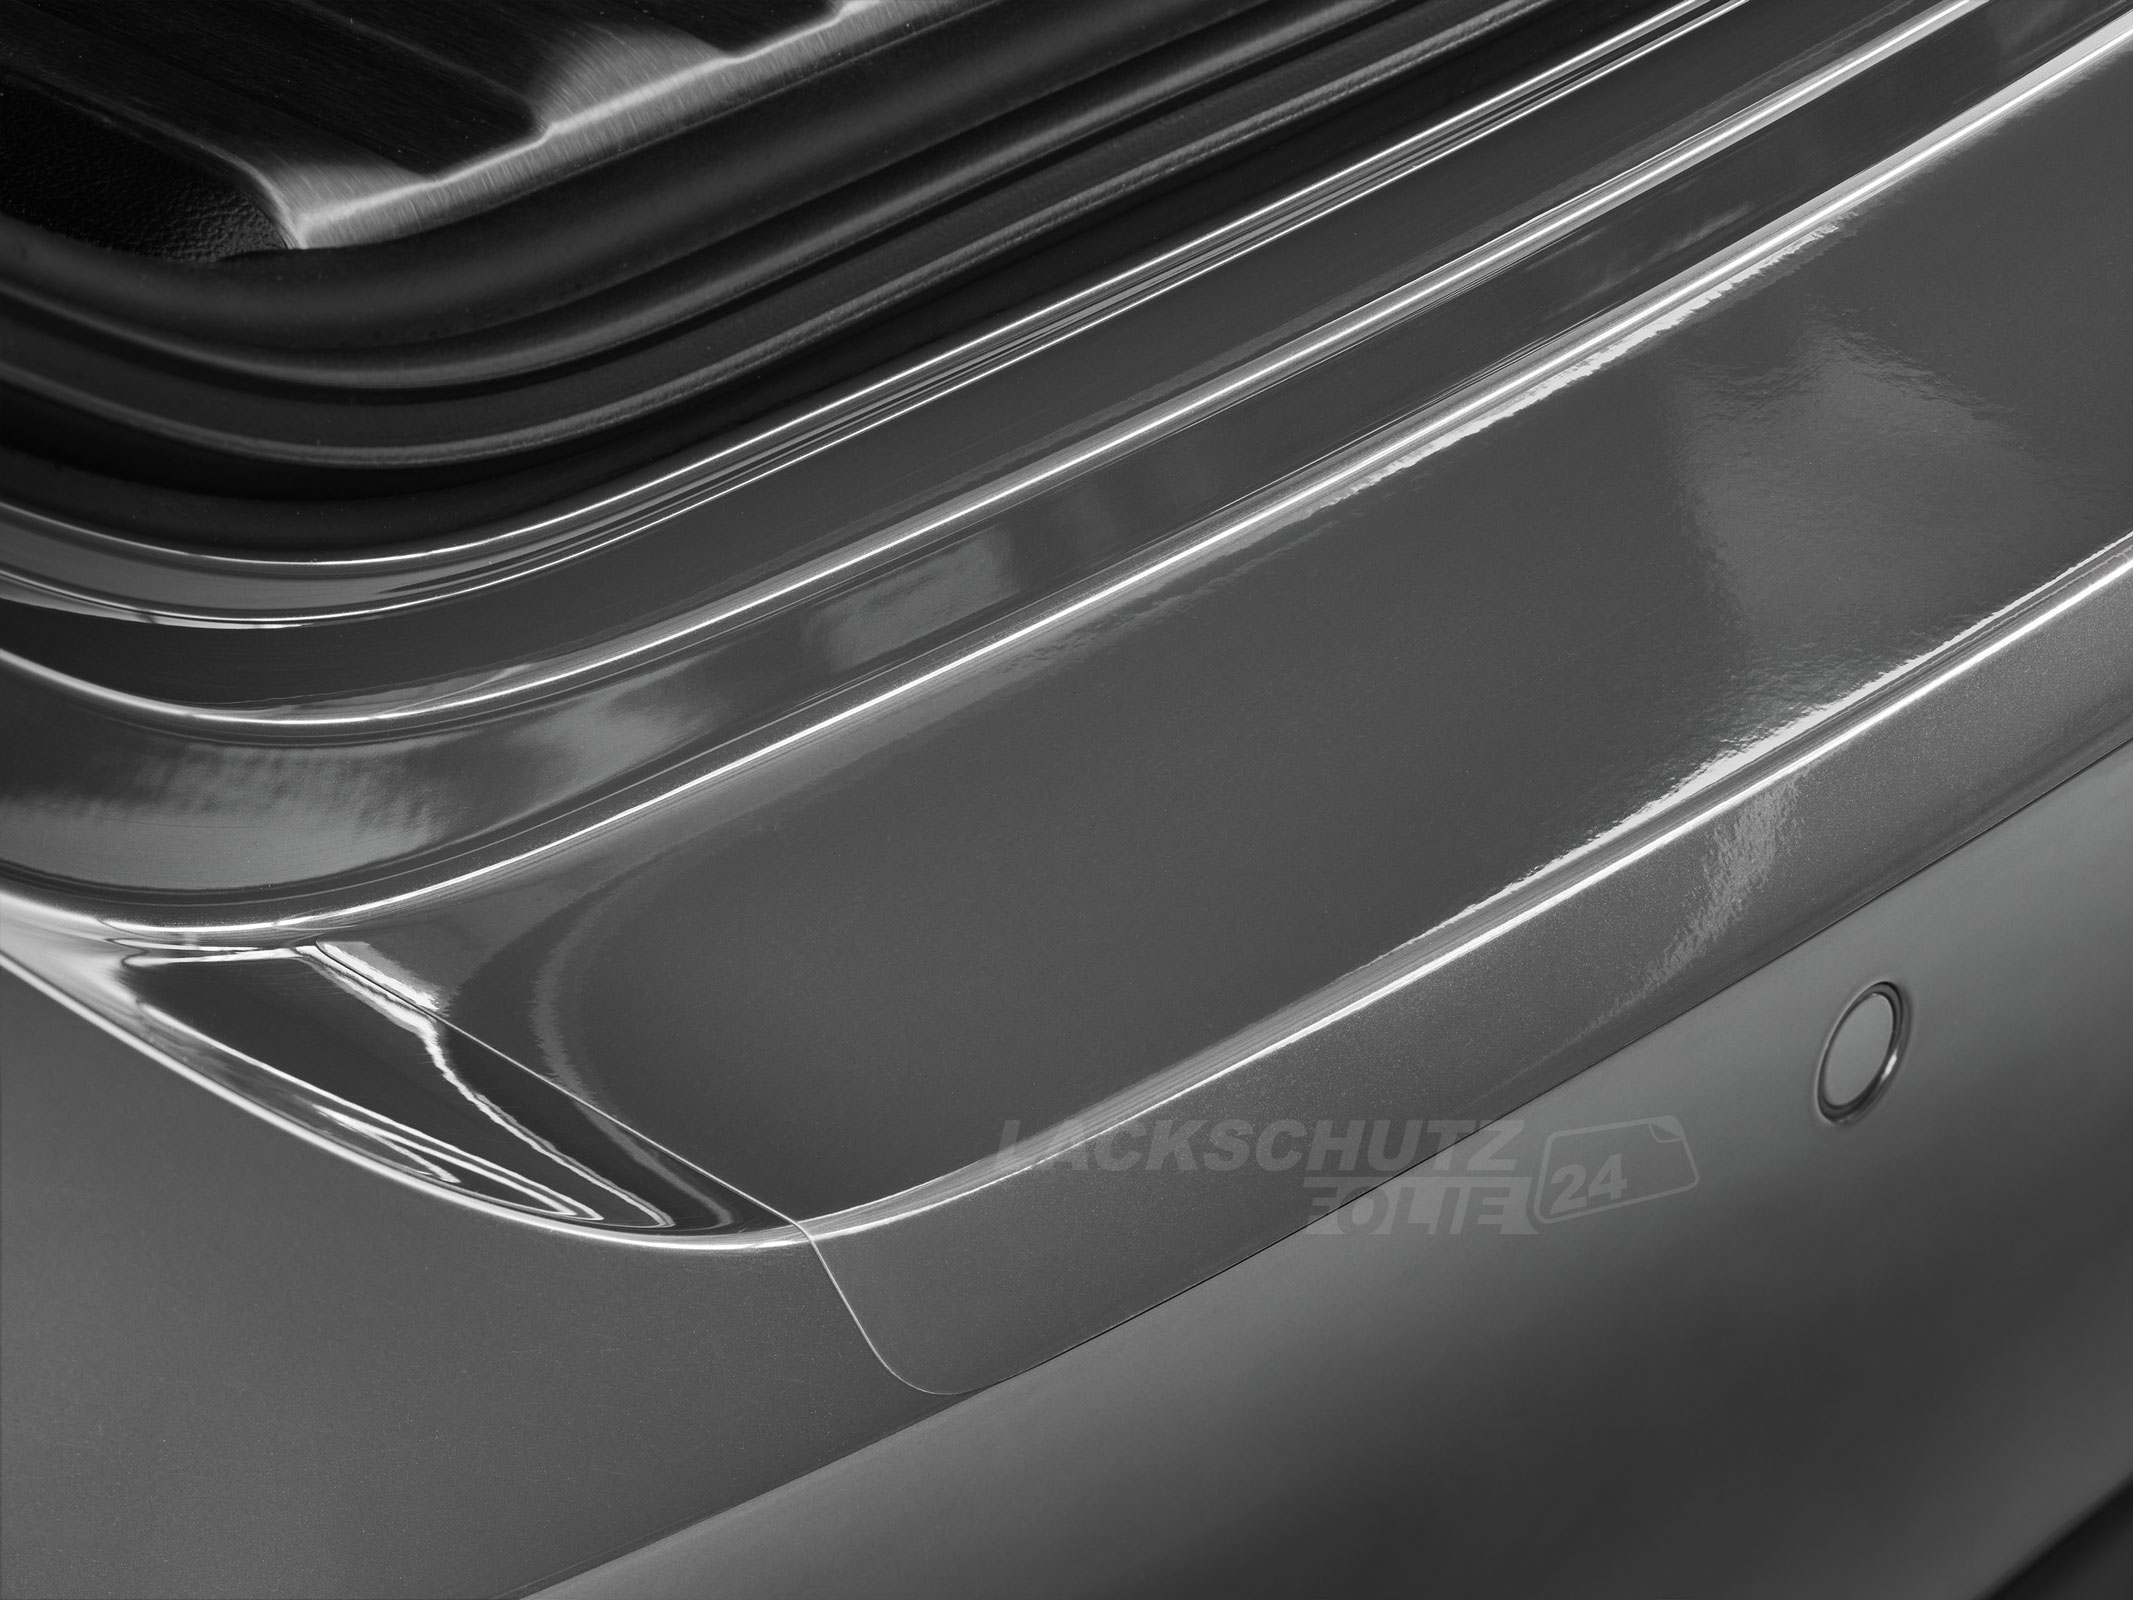 Ladekantenschutzfolie - Transparent Glatt Hochglänzend 150 µm stark für BMW 6er Gran Coupe Typ F06, ab BJ 05/2012